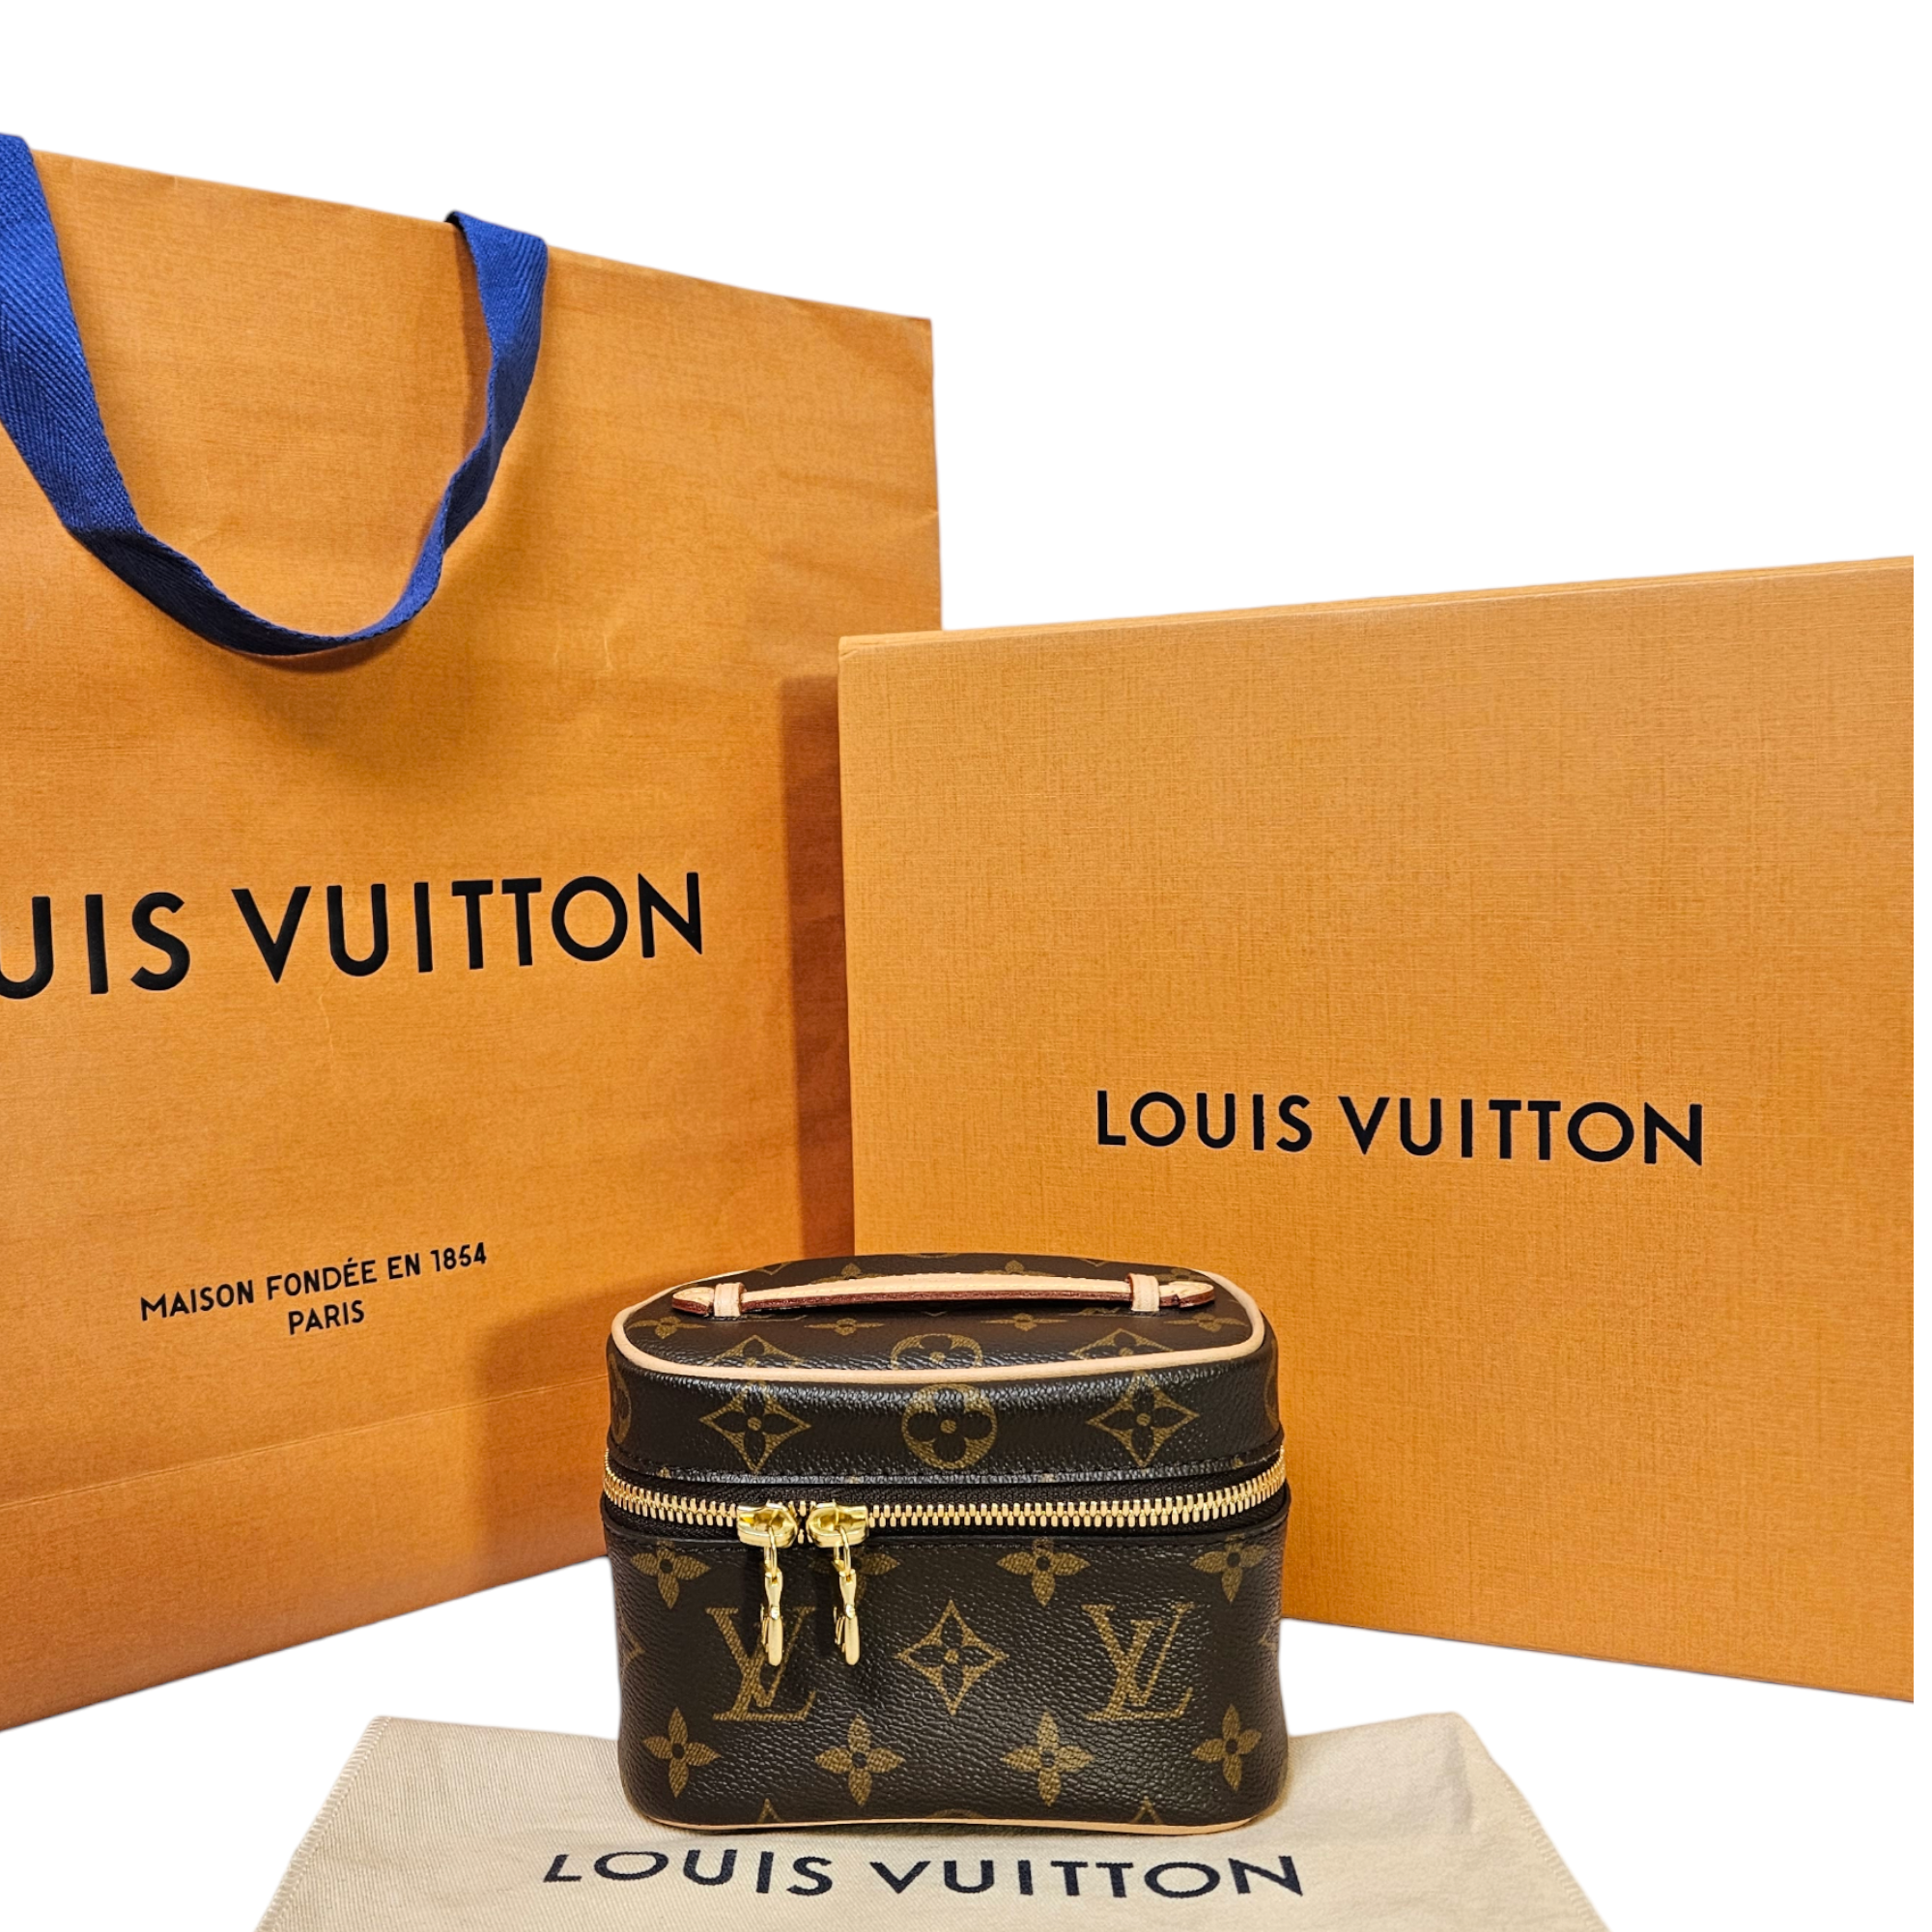 Buy Louis Vuitton Nice Vanity Case Online In India -  India